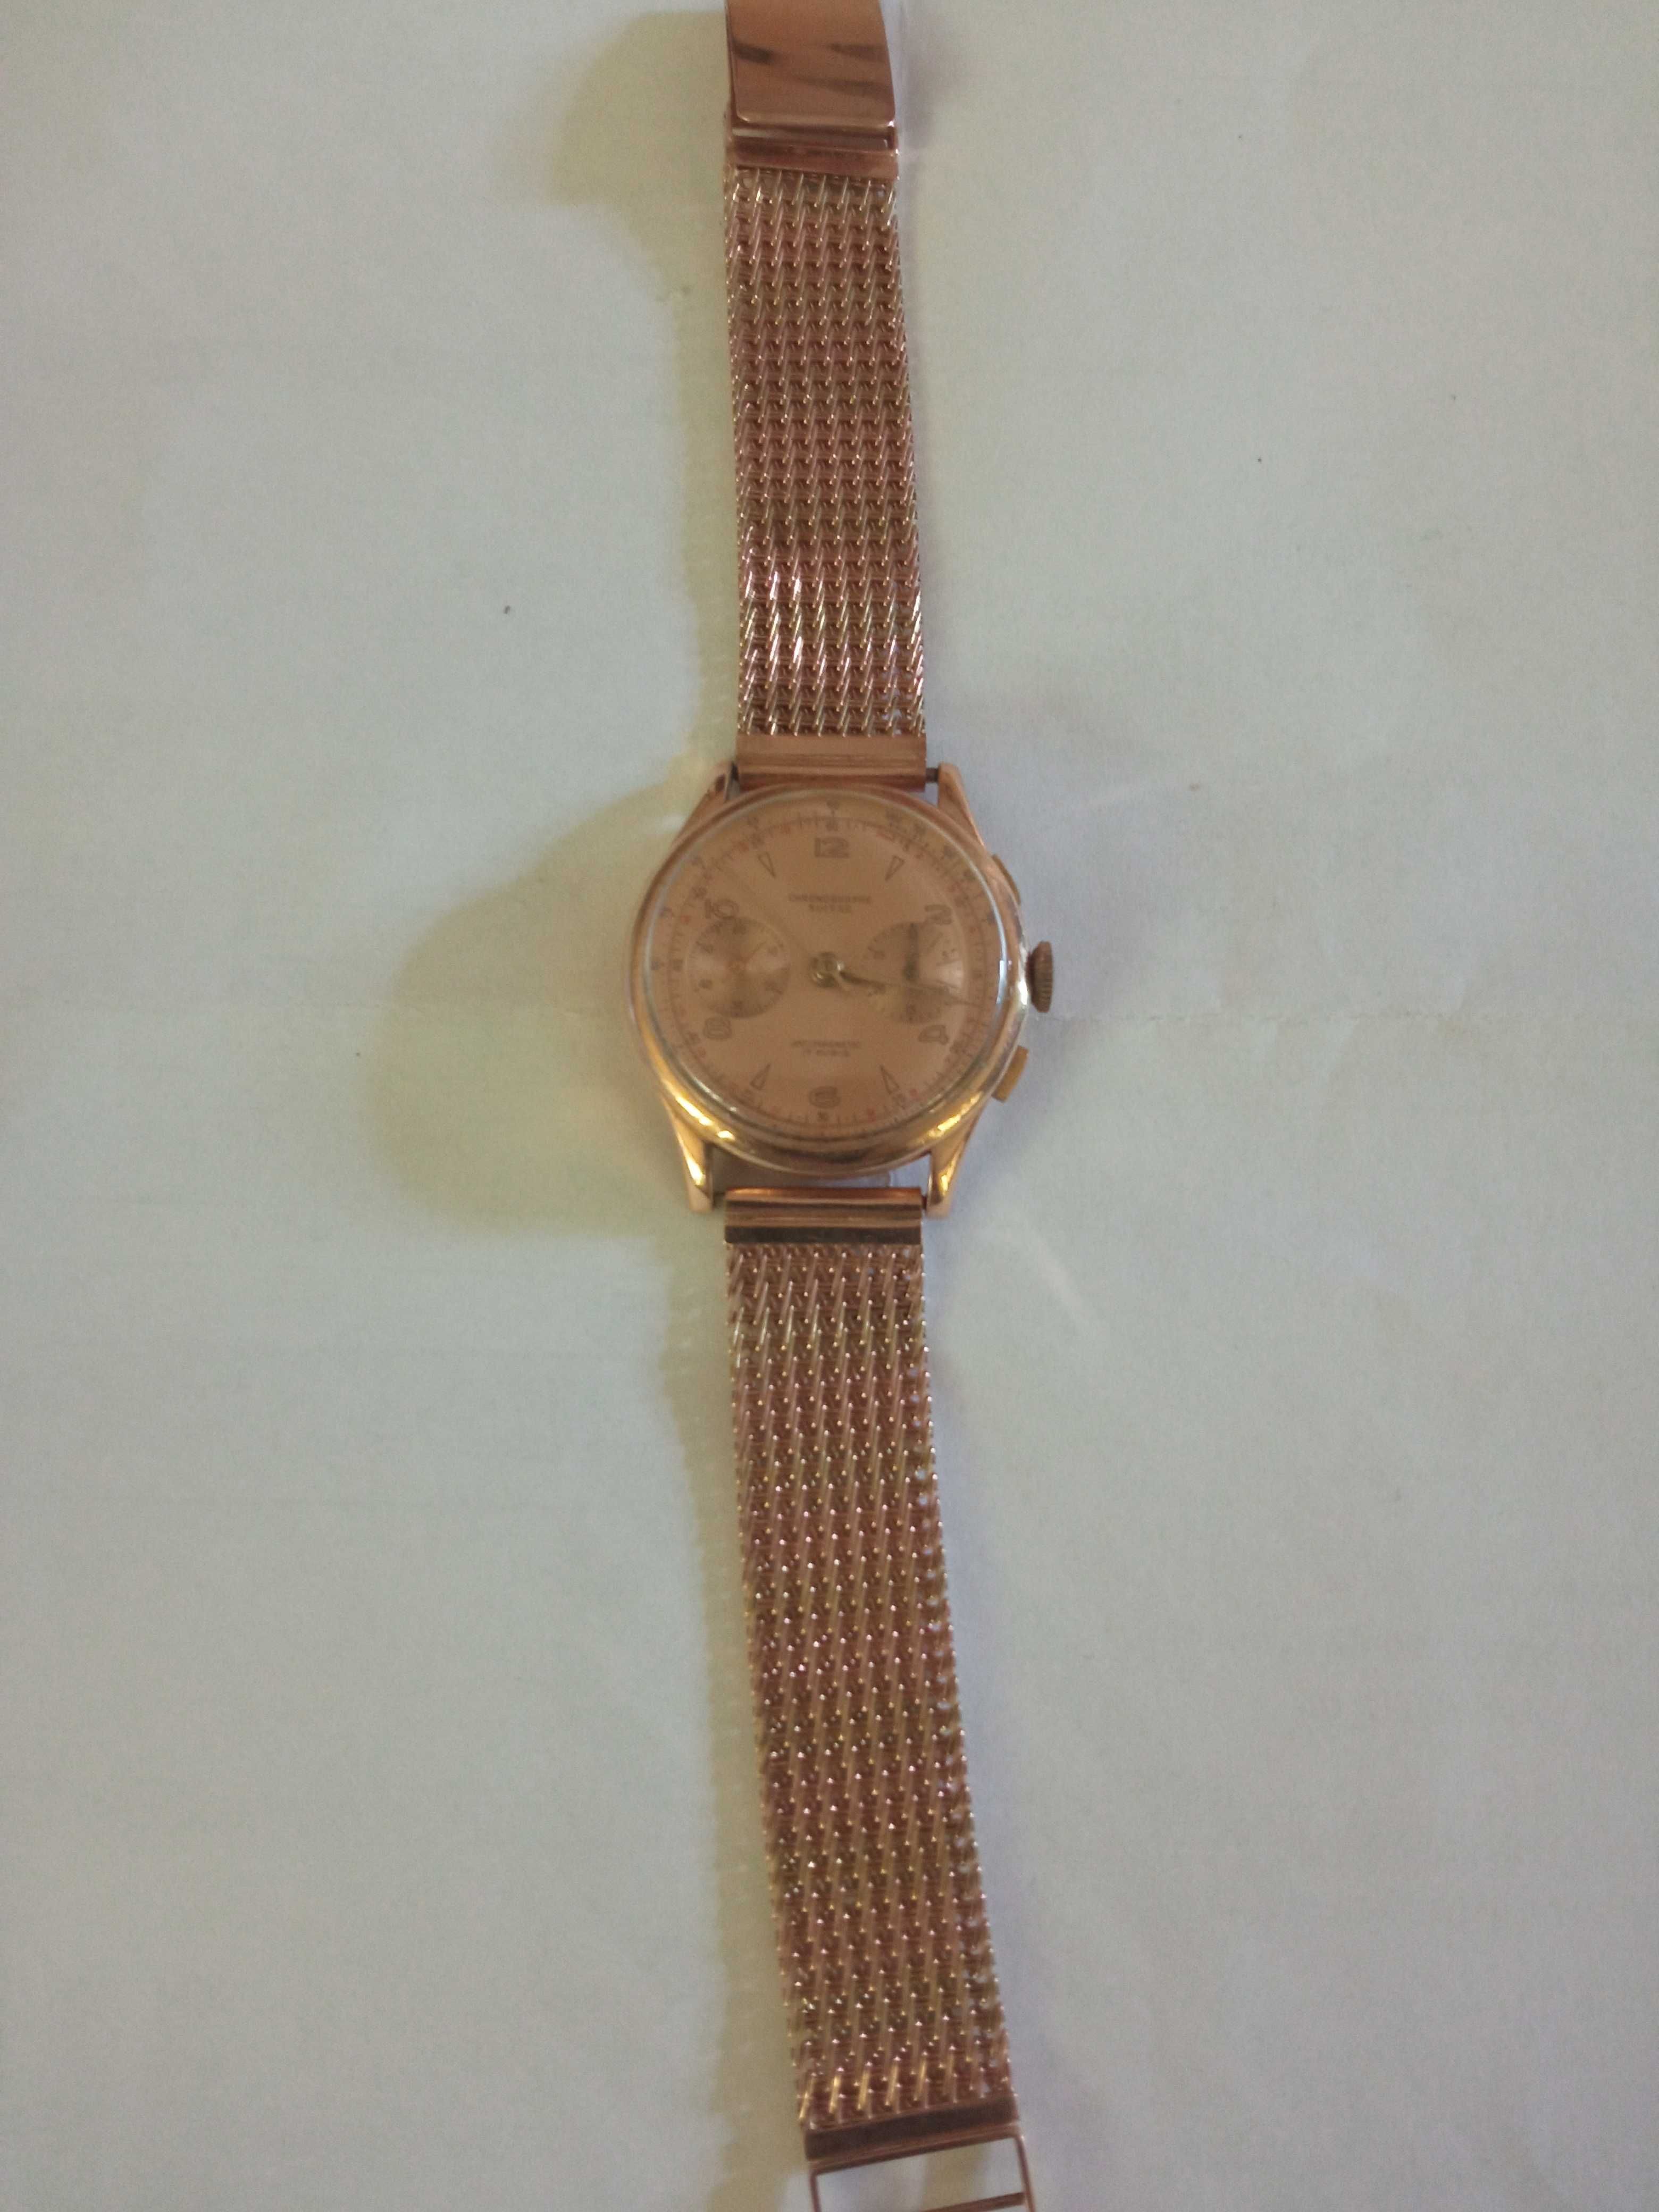 Sprzedam złoty męski zegarek Chronographe Suisse  ze złotą bransoletą